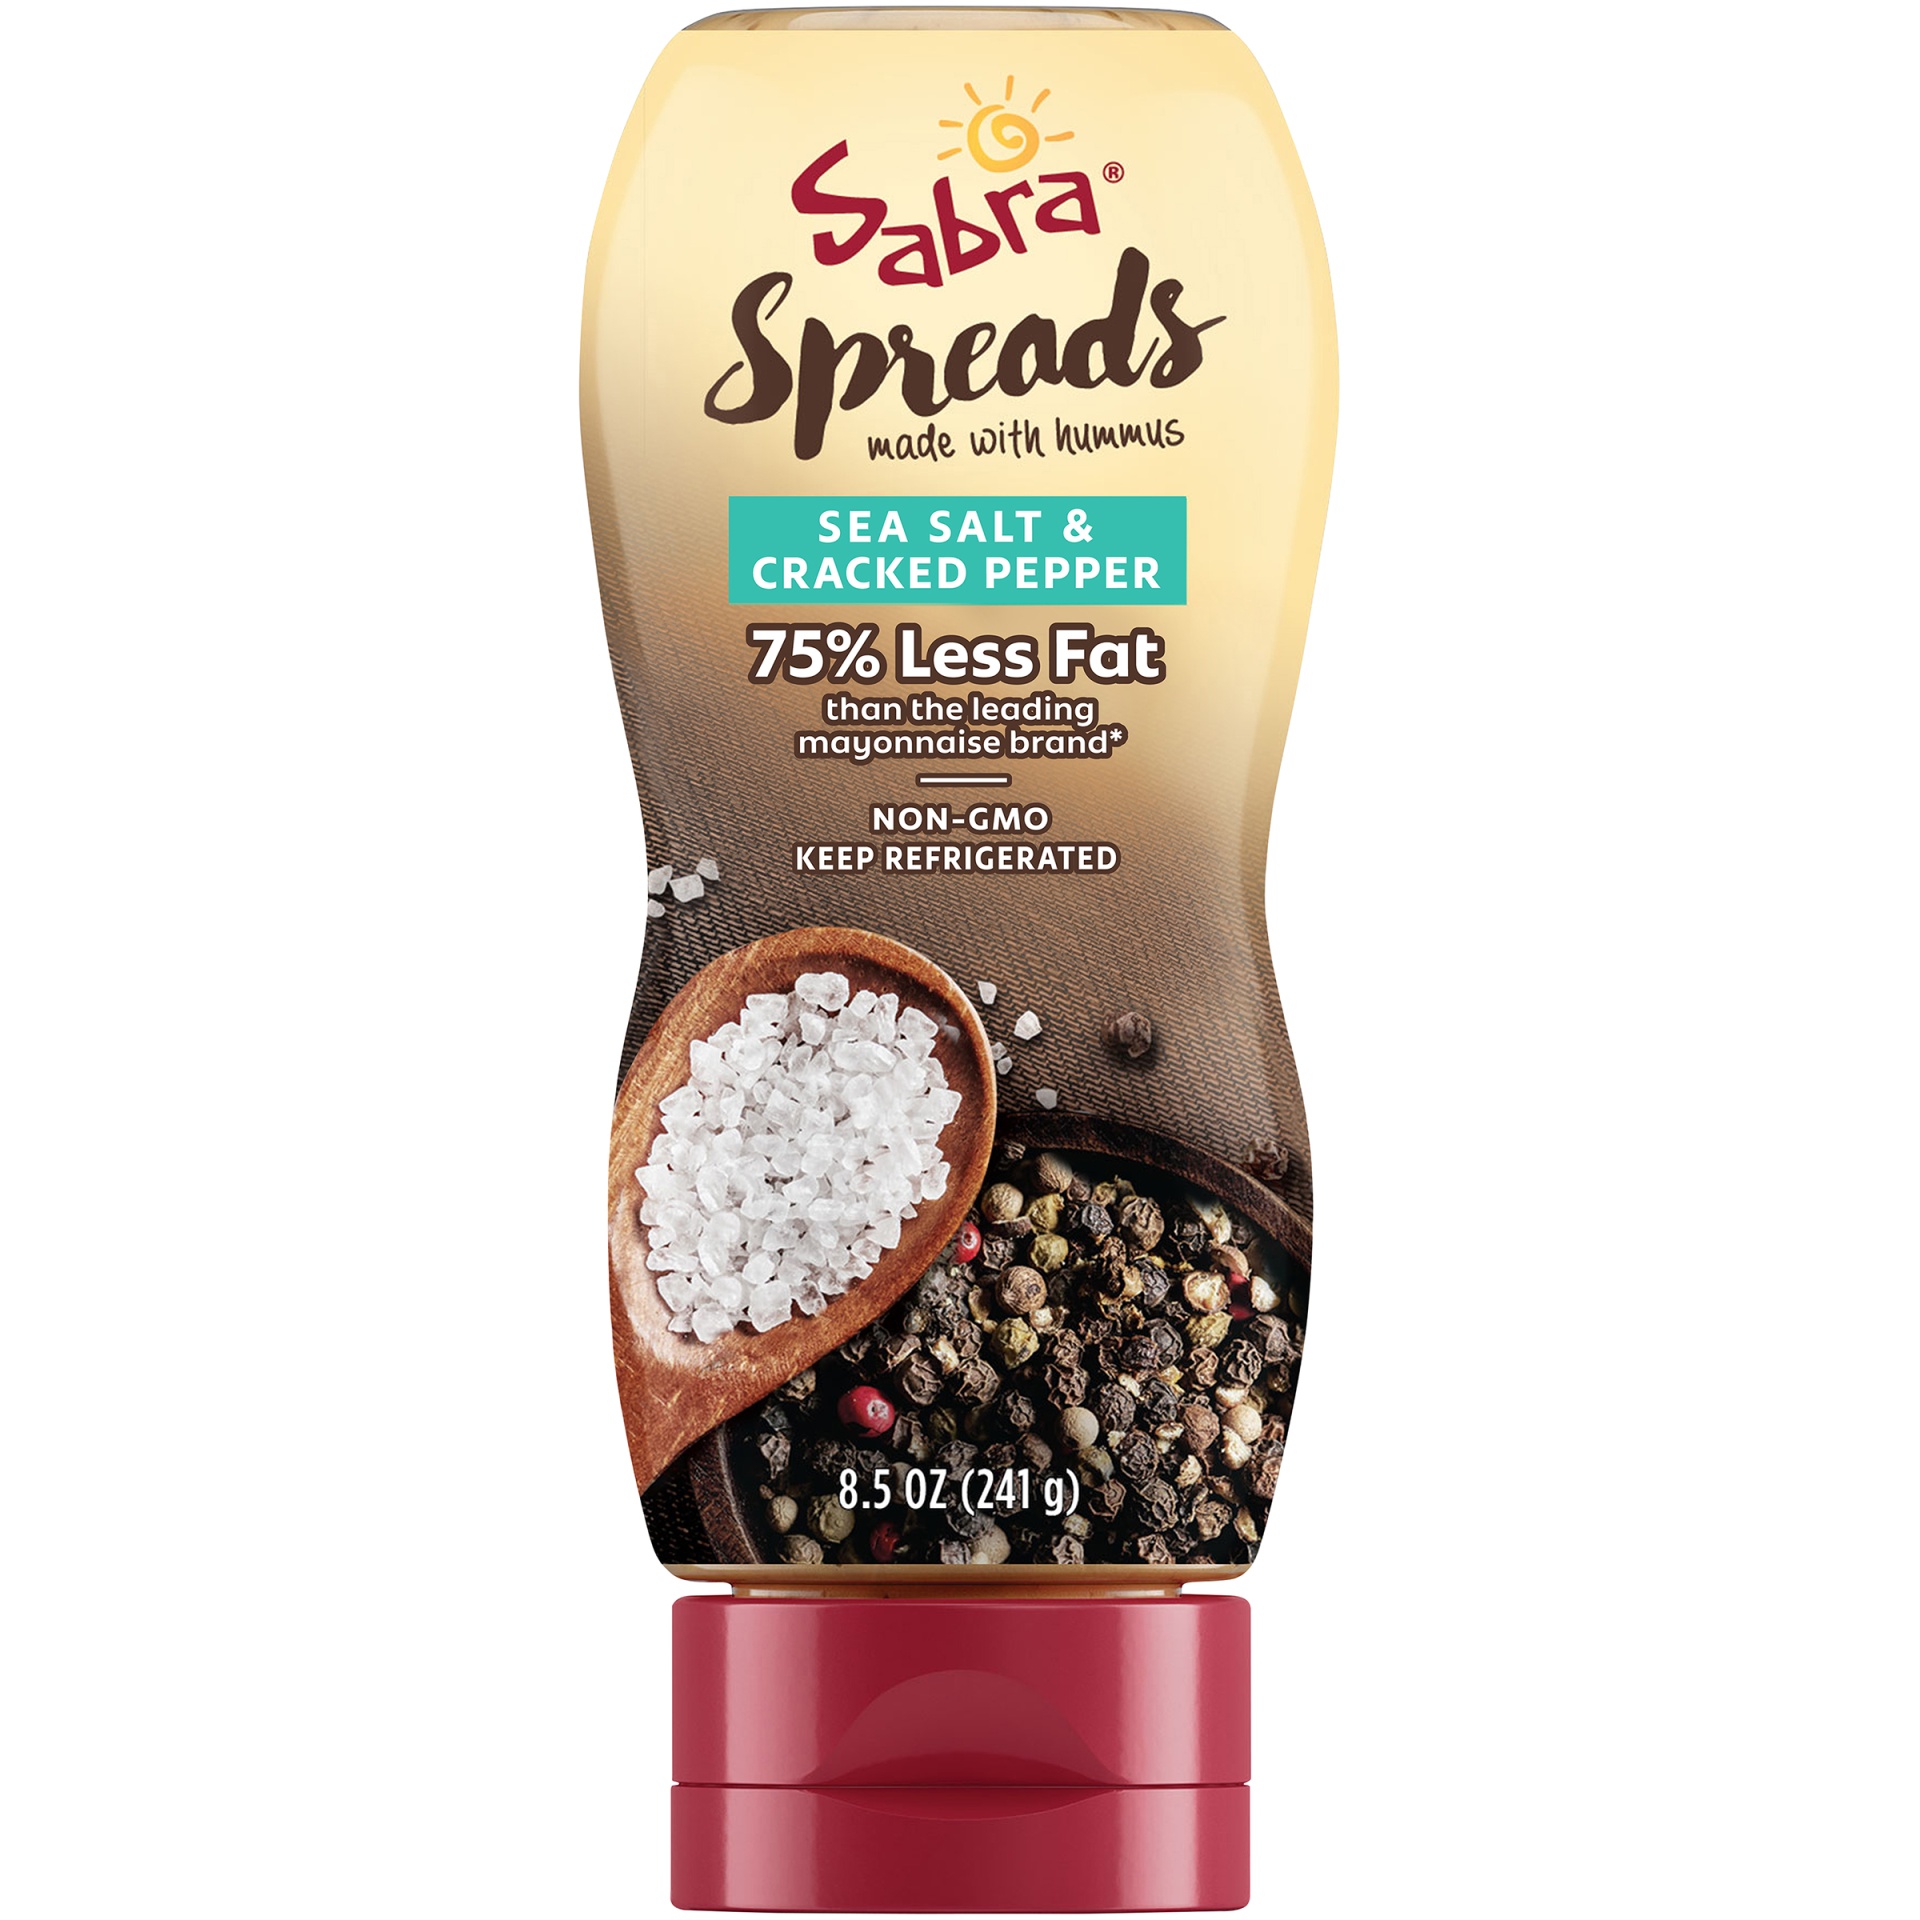 slide 1 of 2, Sabra Spreads Sea Salt & Cracked Pepper, 8.5 oz